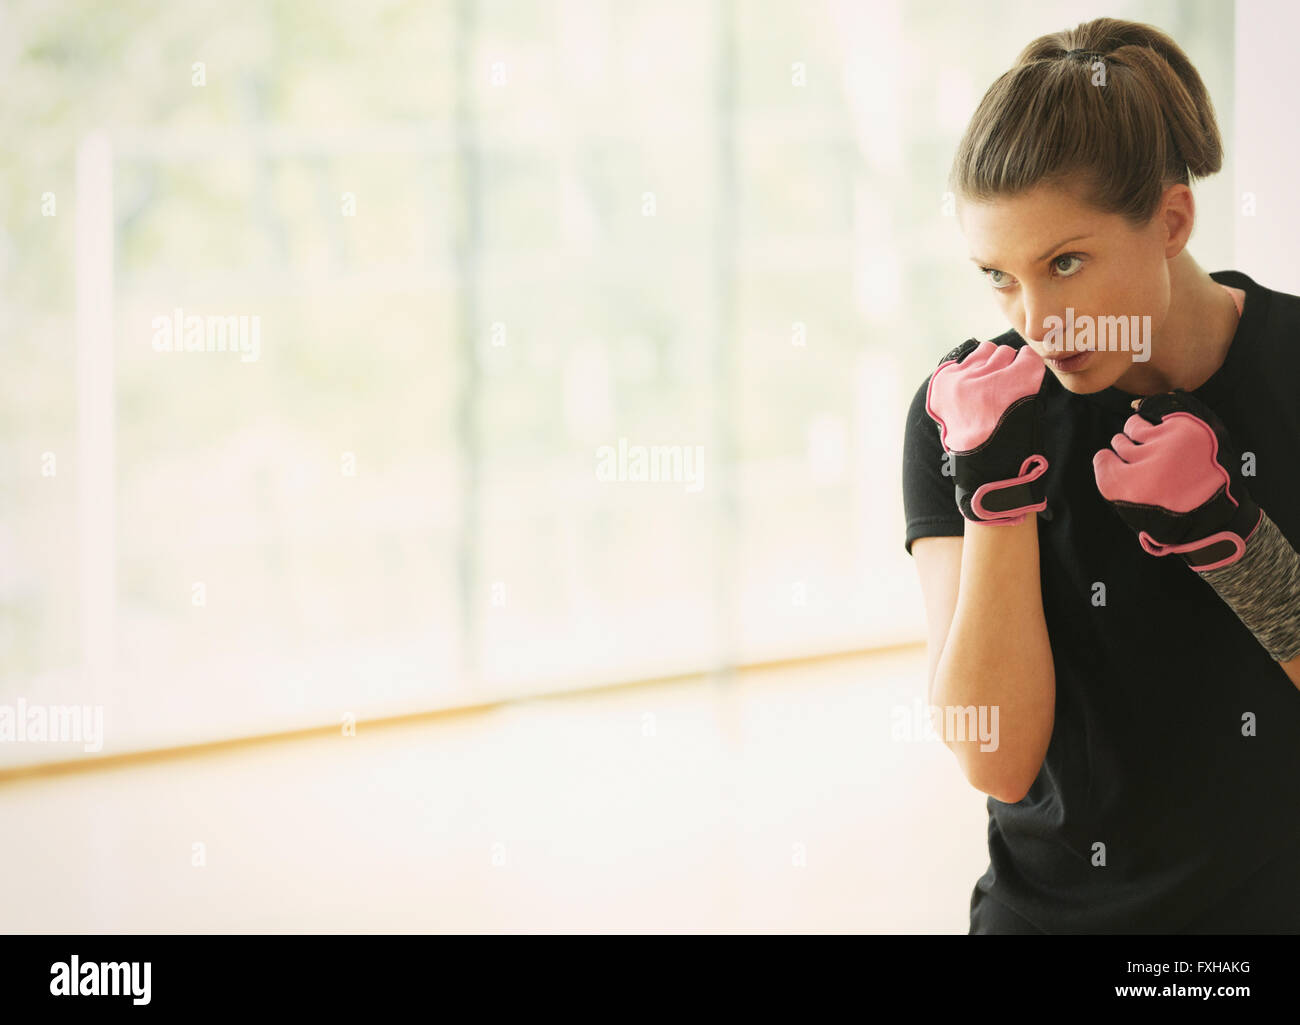 L'accent femme shadow boxing gym en studio Banque D'Images